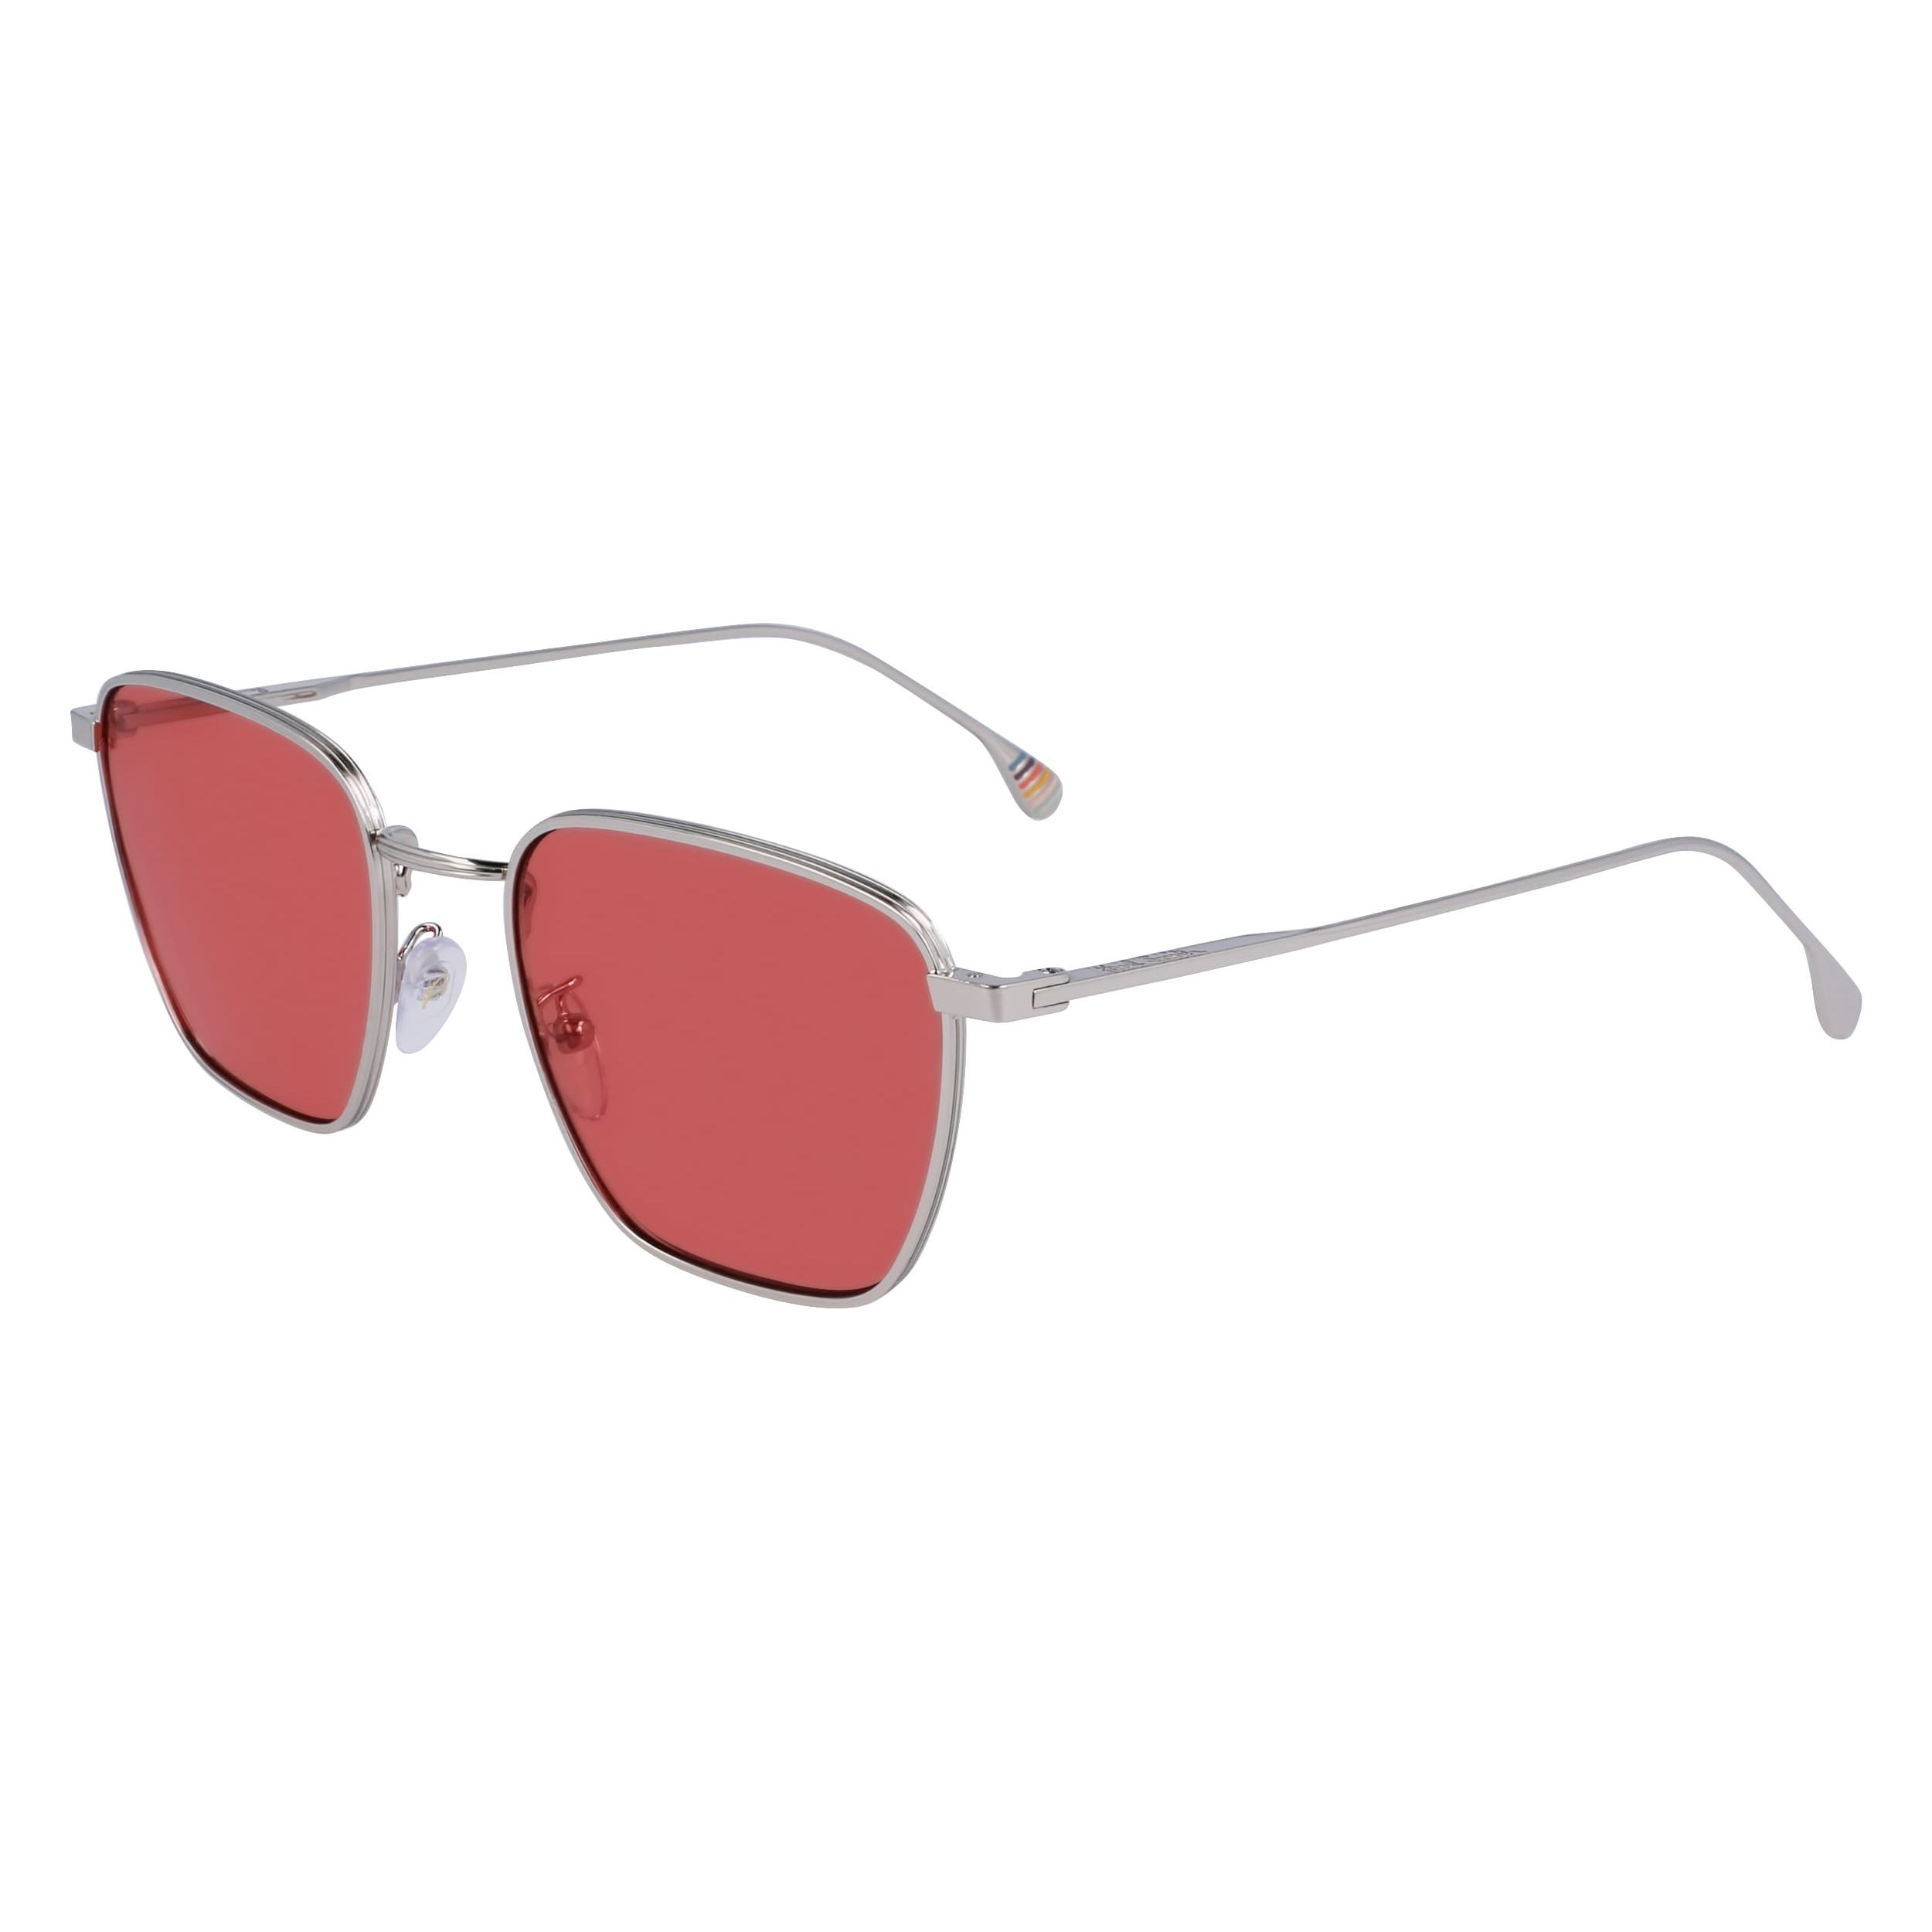 ERROL Square Sunglasses 004 - size 53